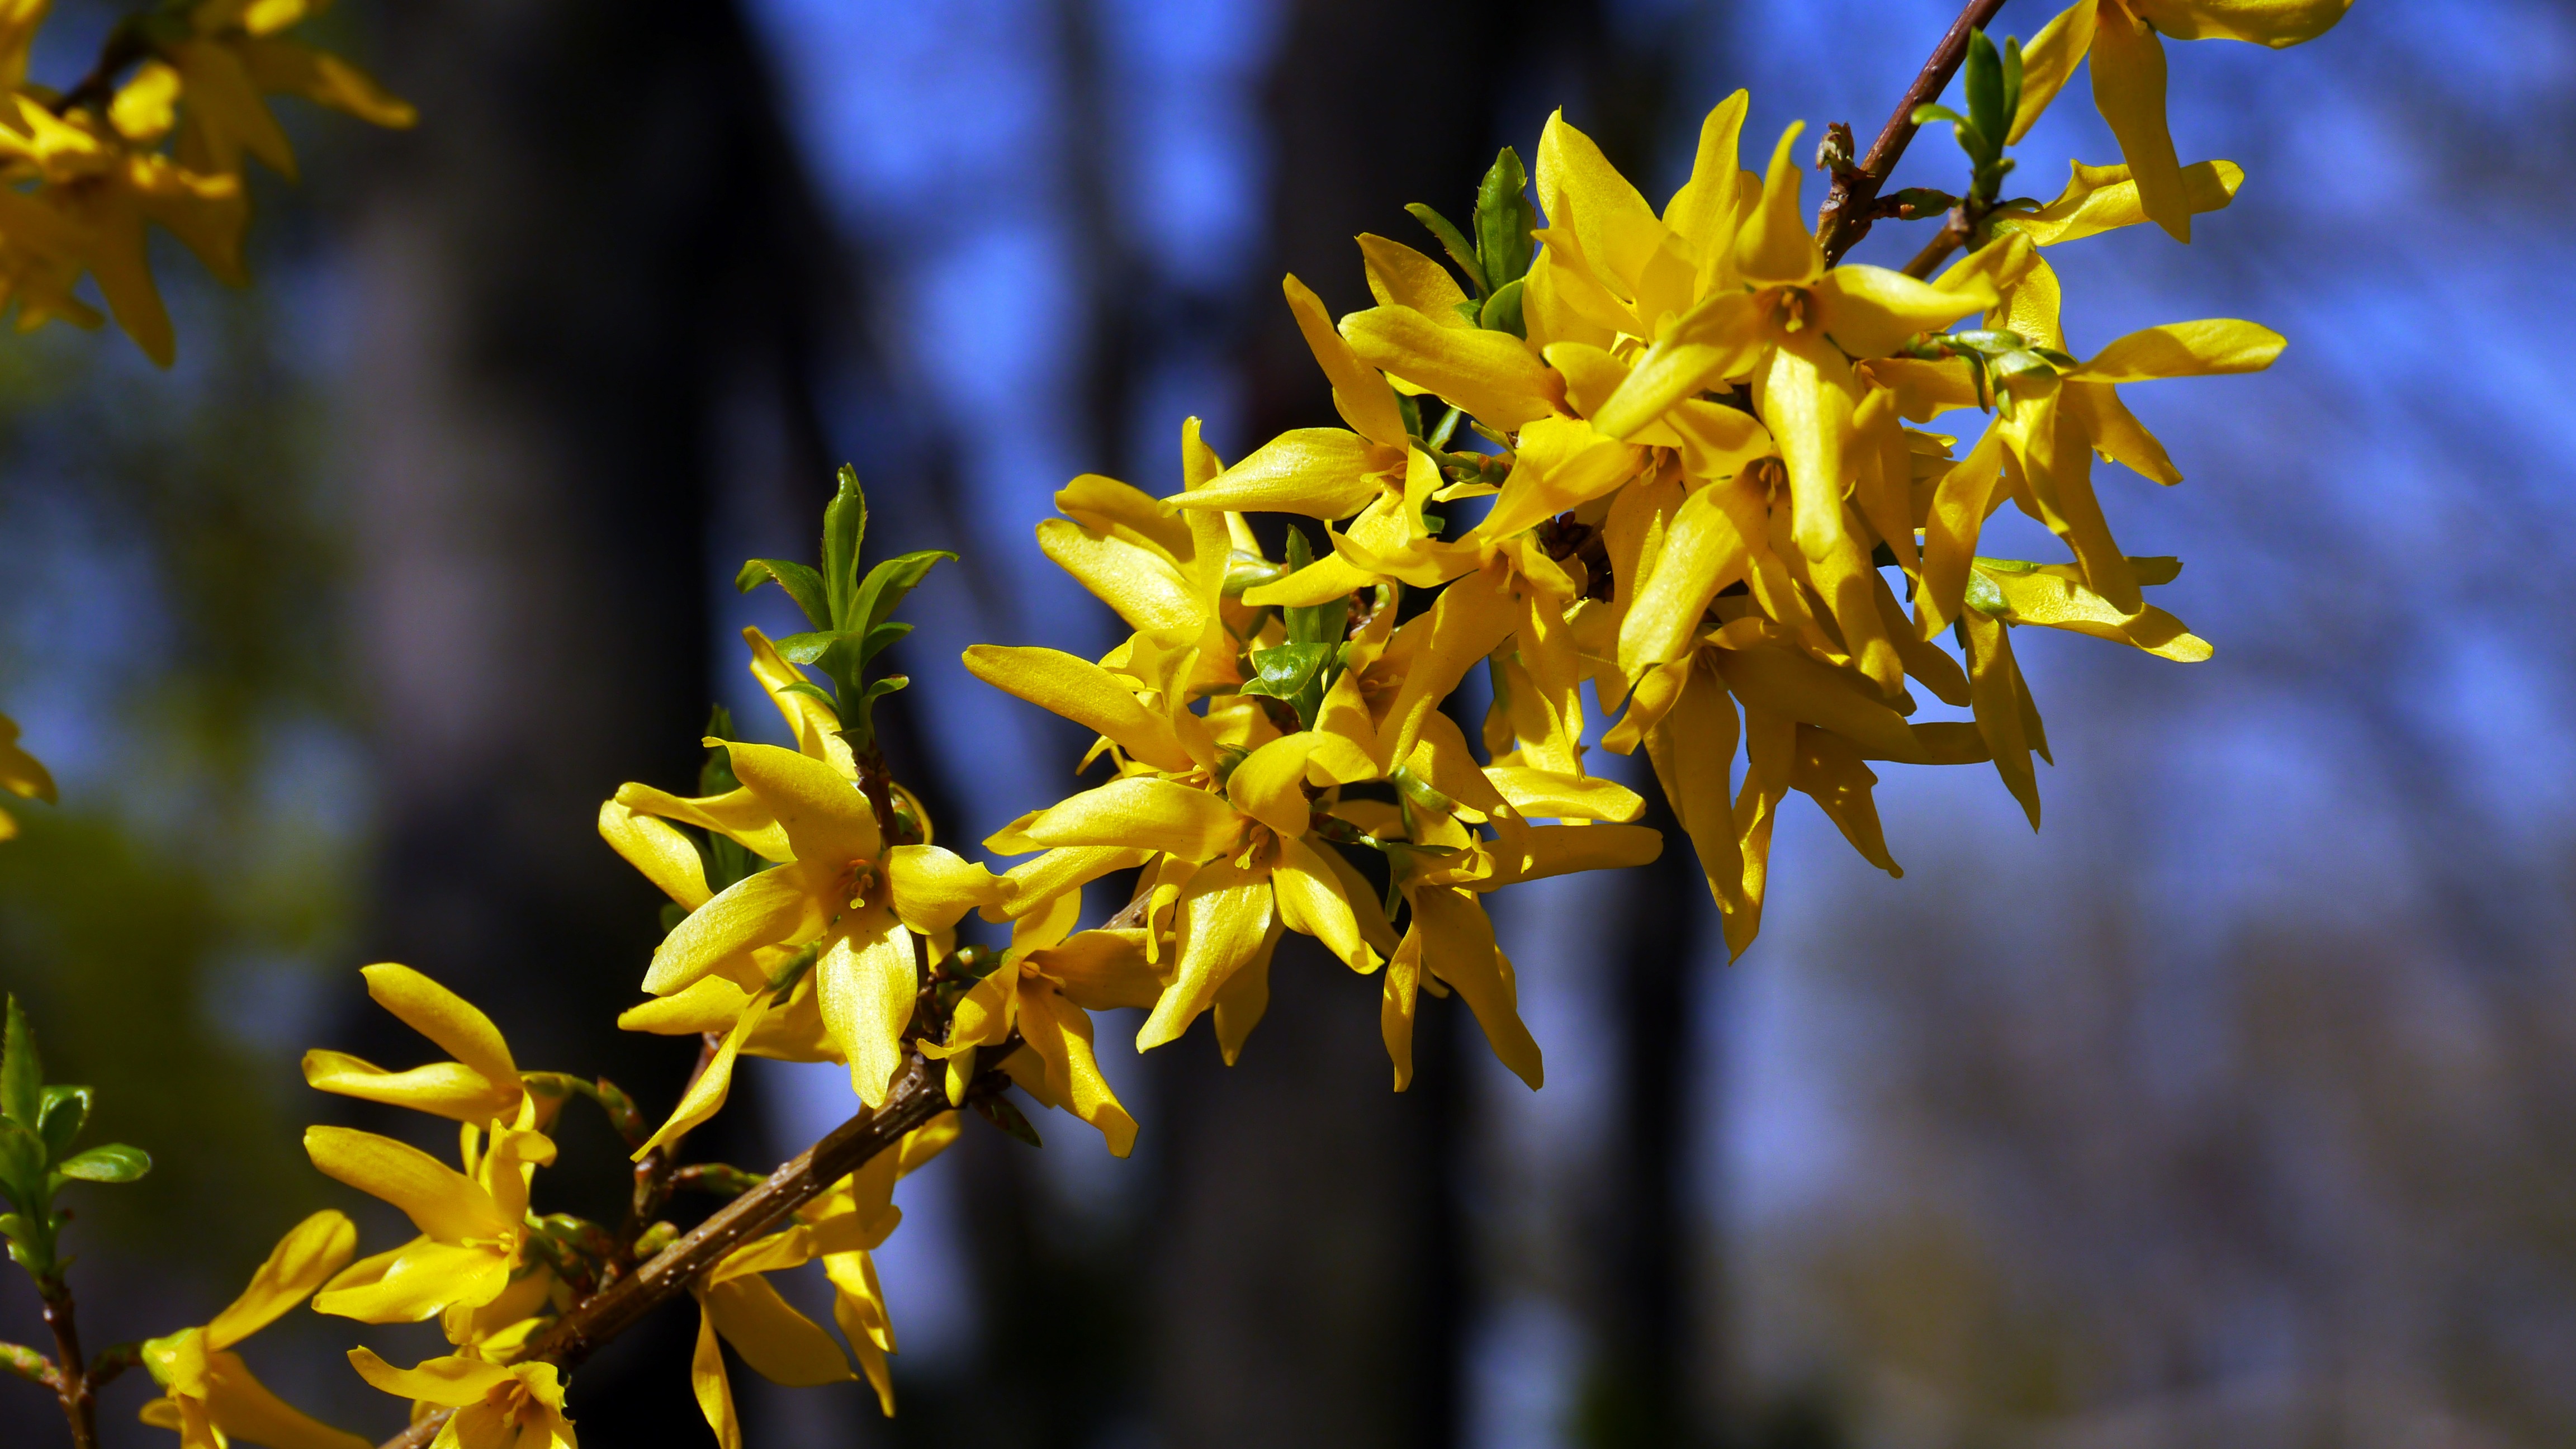 Yellow flowering shrub in spring